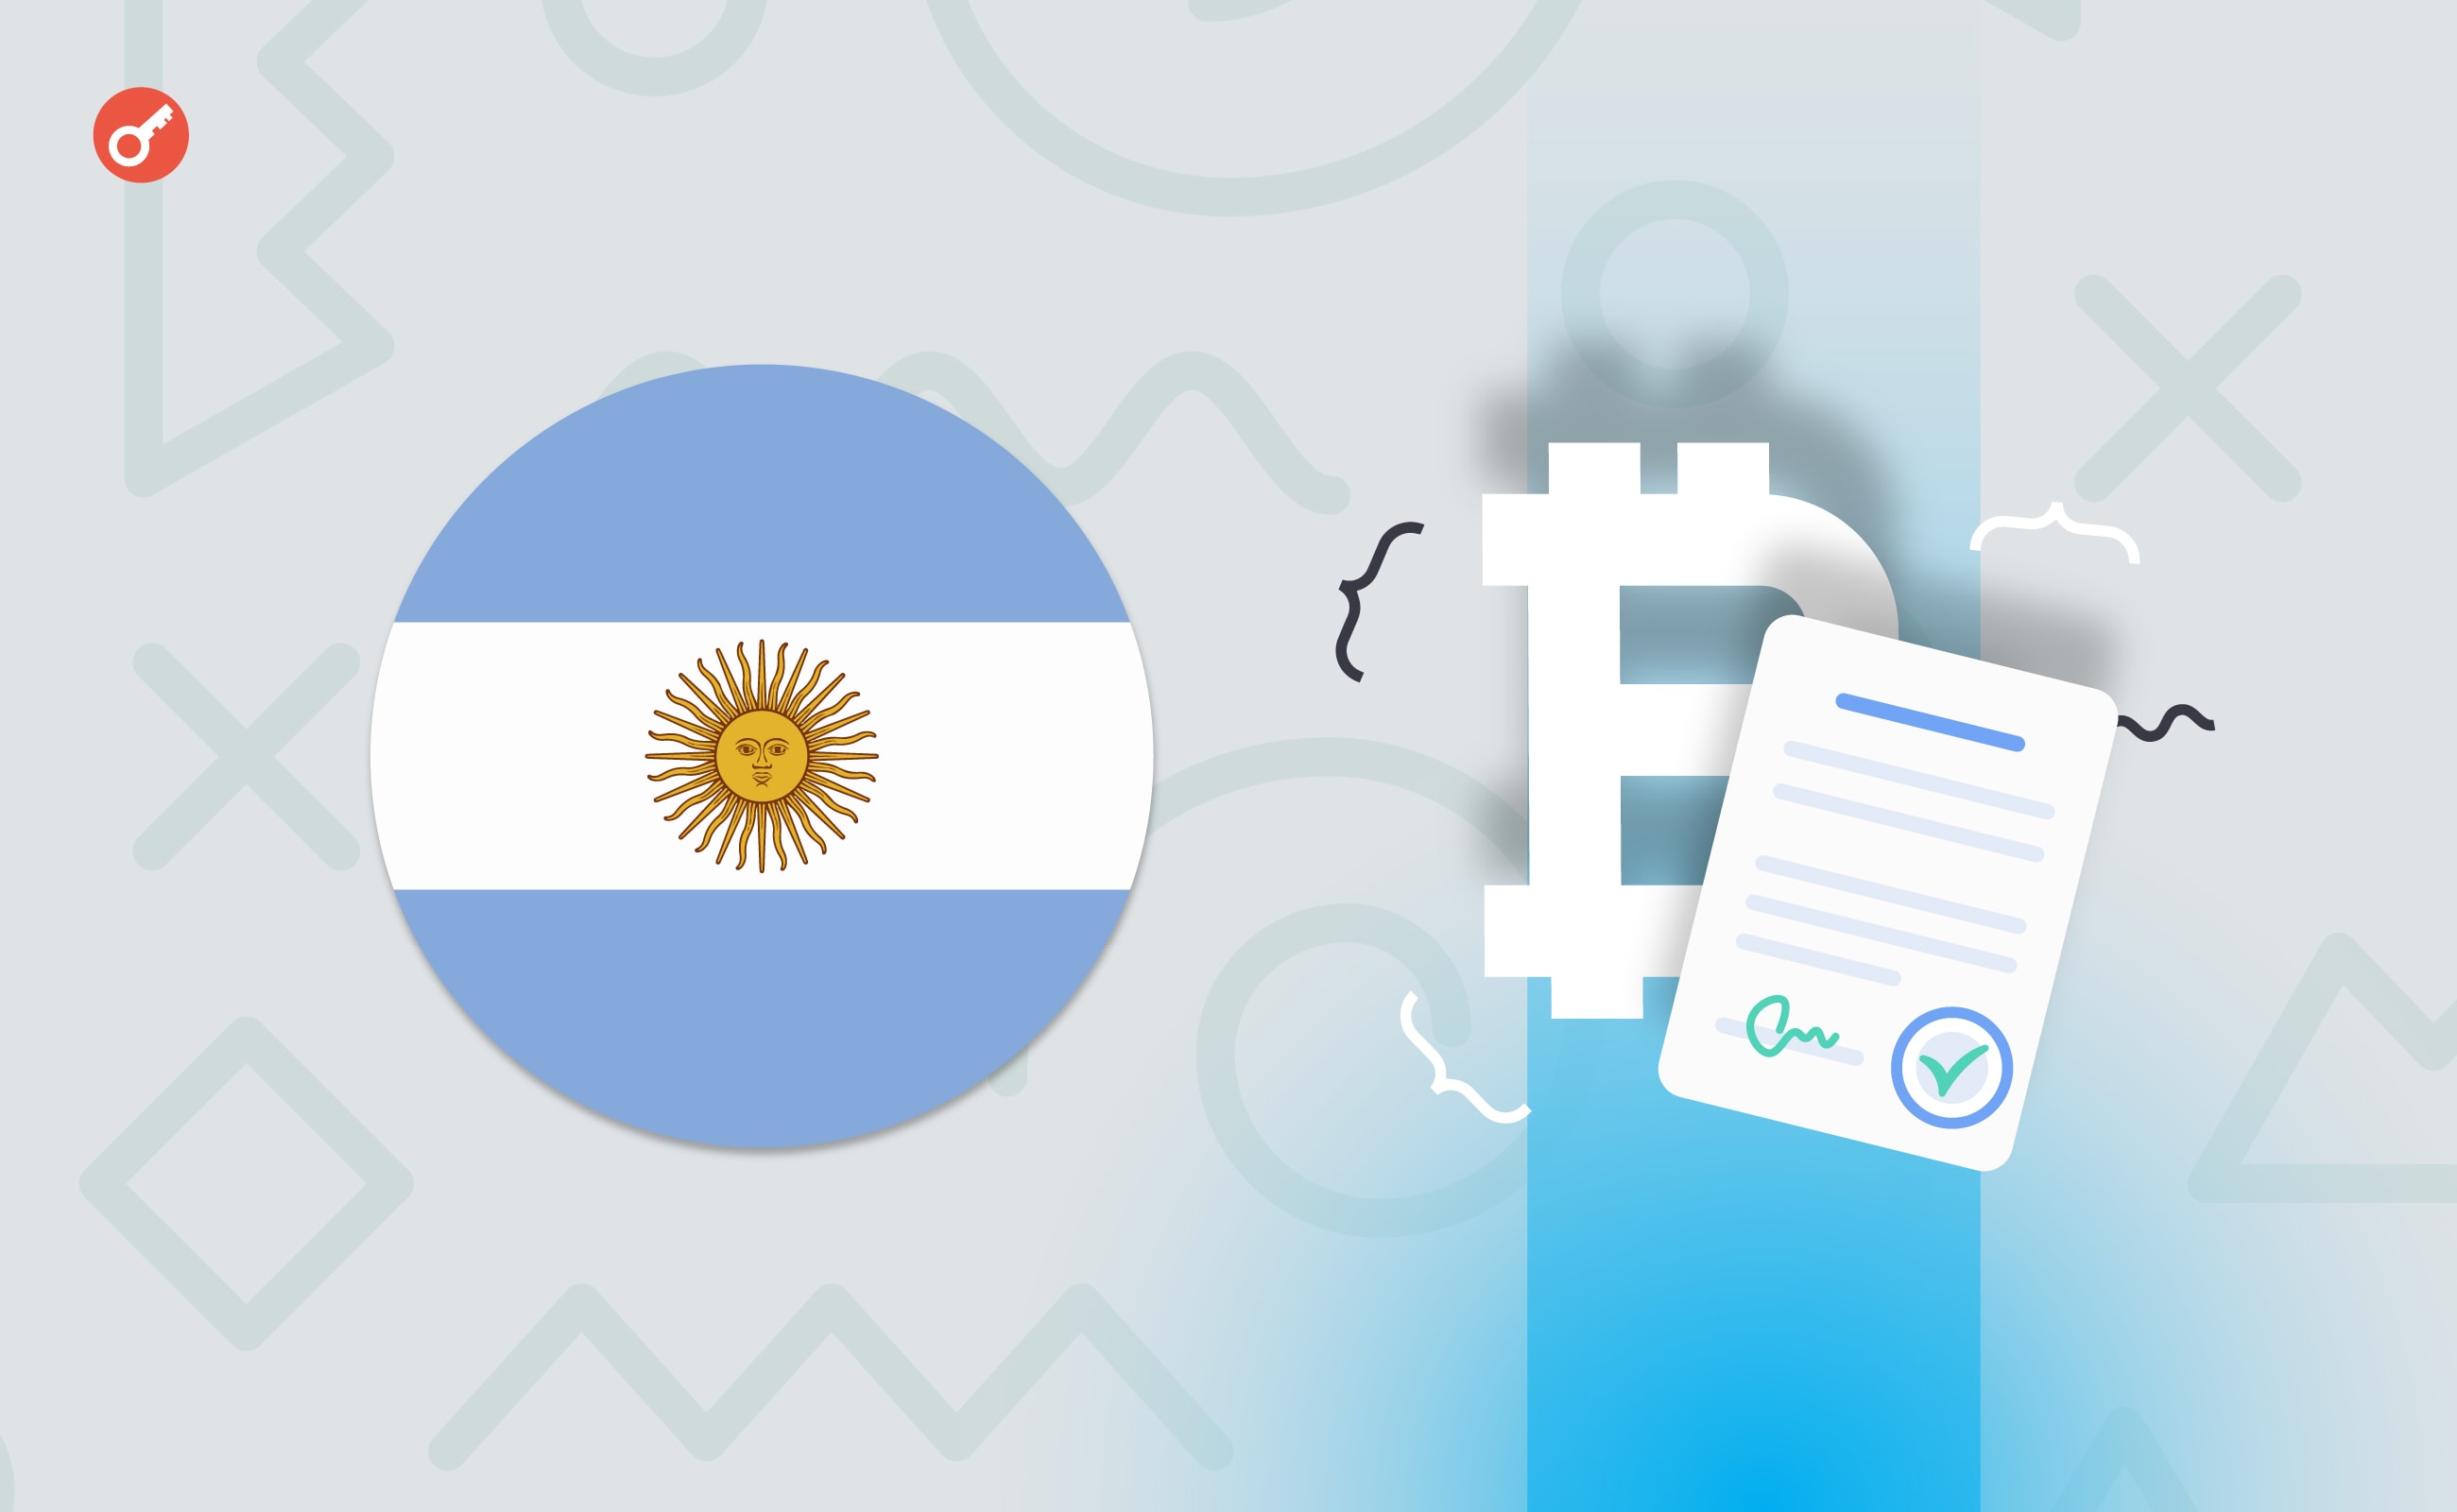 В Аргентине зарегистрировали первый договор об аренде с оплатой в биткоинах. Заглавный коллаж новости.